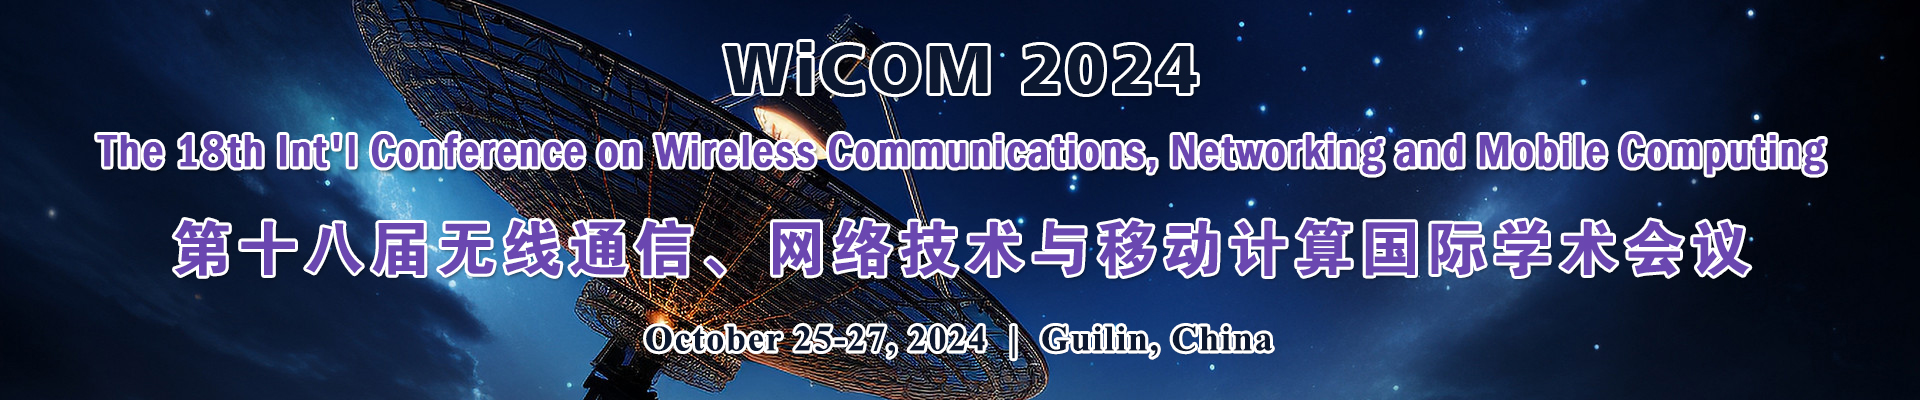 第十八届无线通信、网络技术与移动计算国际学术会议 (WiCOM 2024) 